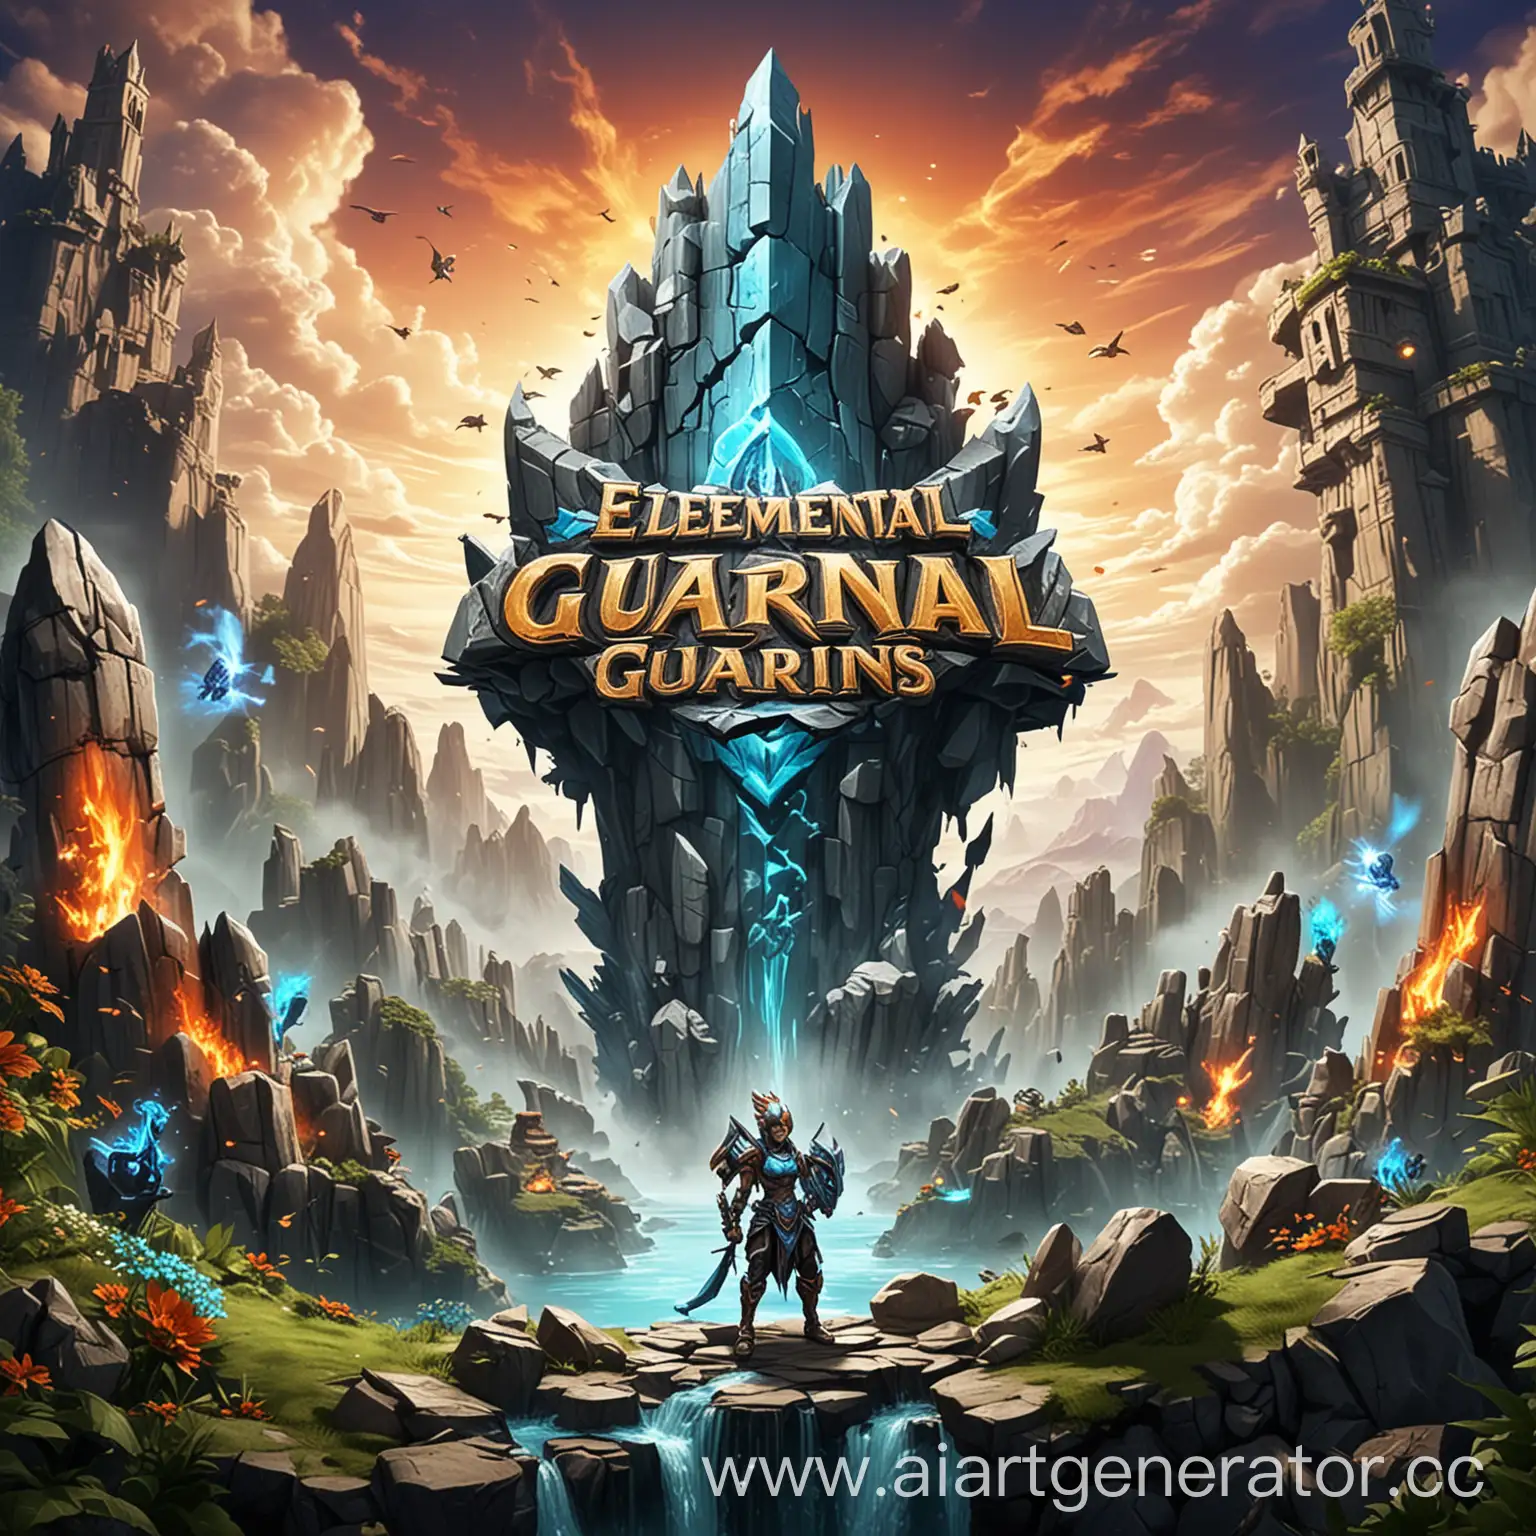 Сделай картинку на фон меню для мобильной игры Tower Defense, название игры: "Elemental Guardians"